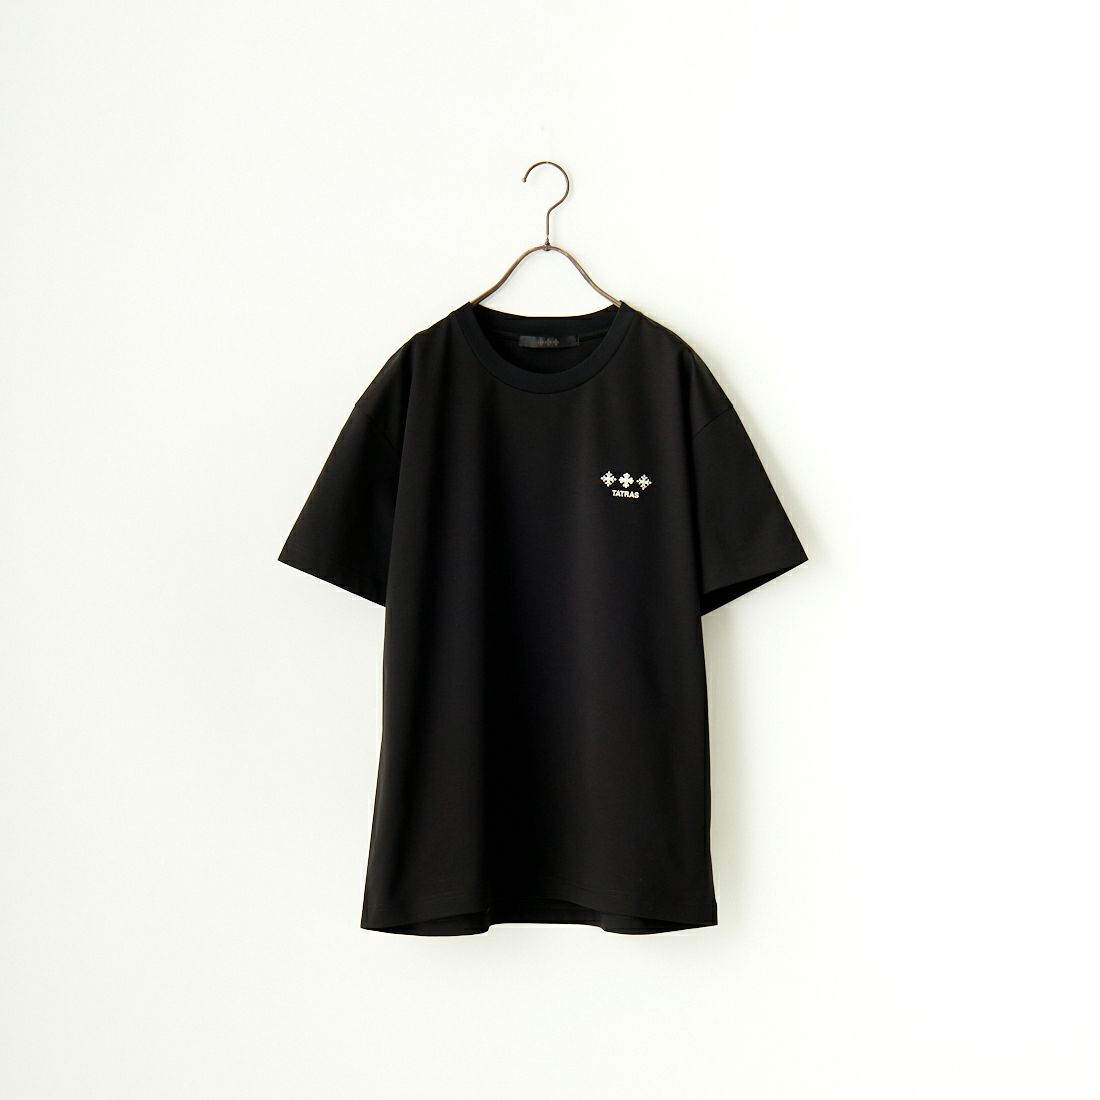 TATRAS [タトラス] NUNKI/ヌンキ ブランドロゴTシャツ [MTAT24S8193-M] BLACK